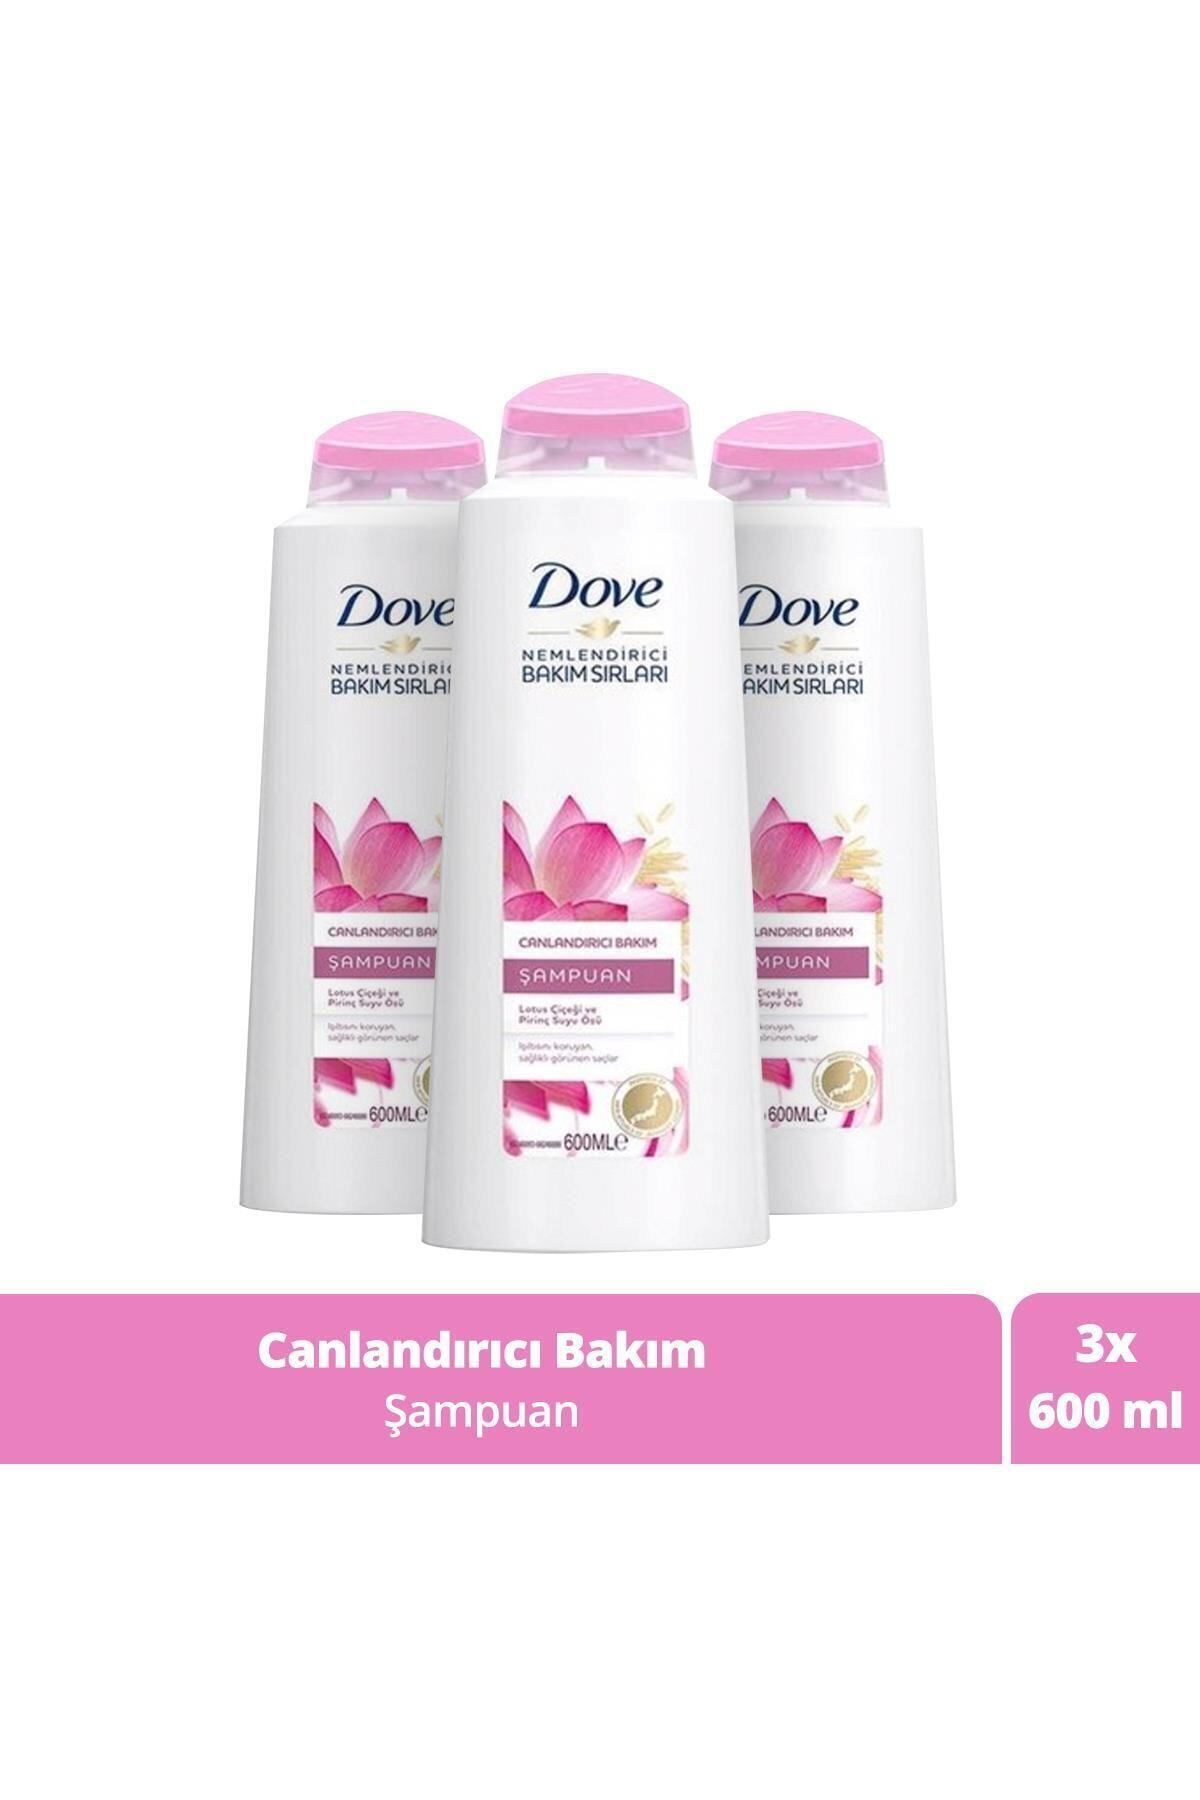 Dove Canlandırıcı Bakım Lotus Çiçeği Ve Pirinç Suyu Özlü Şampuan 600 ml X 3